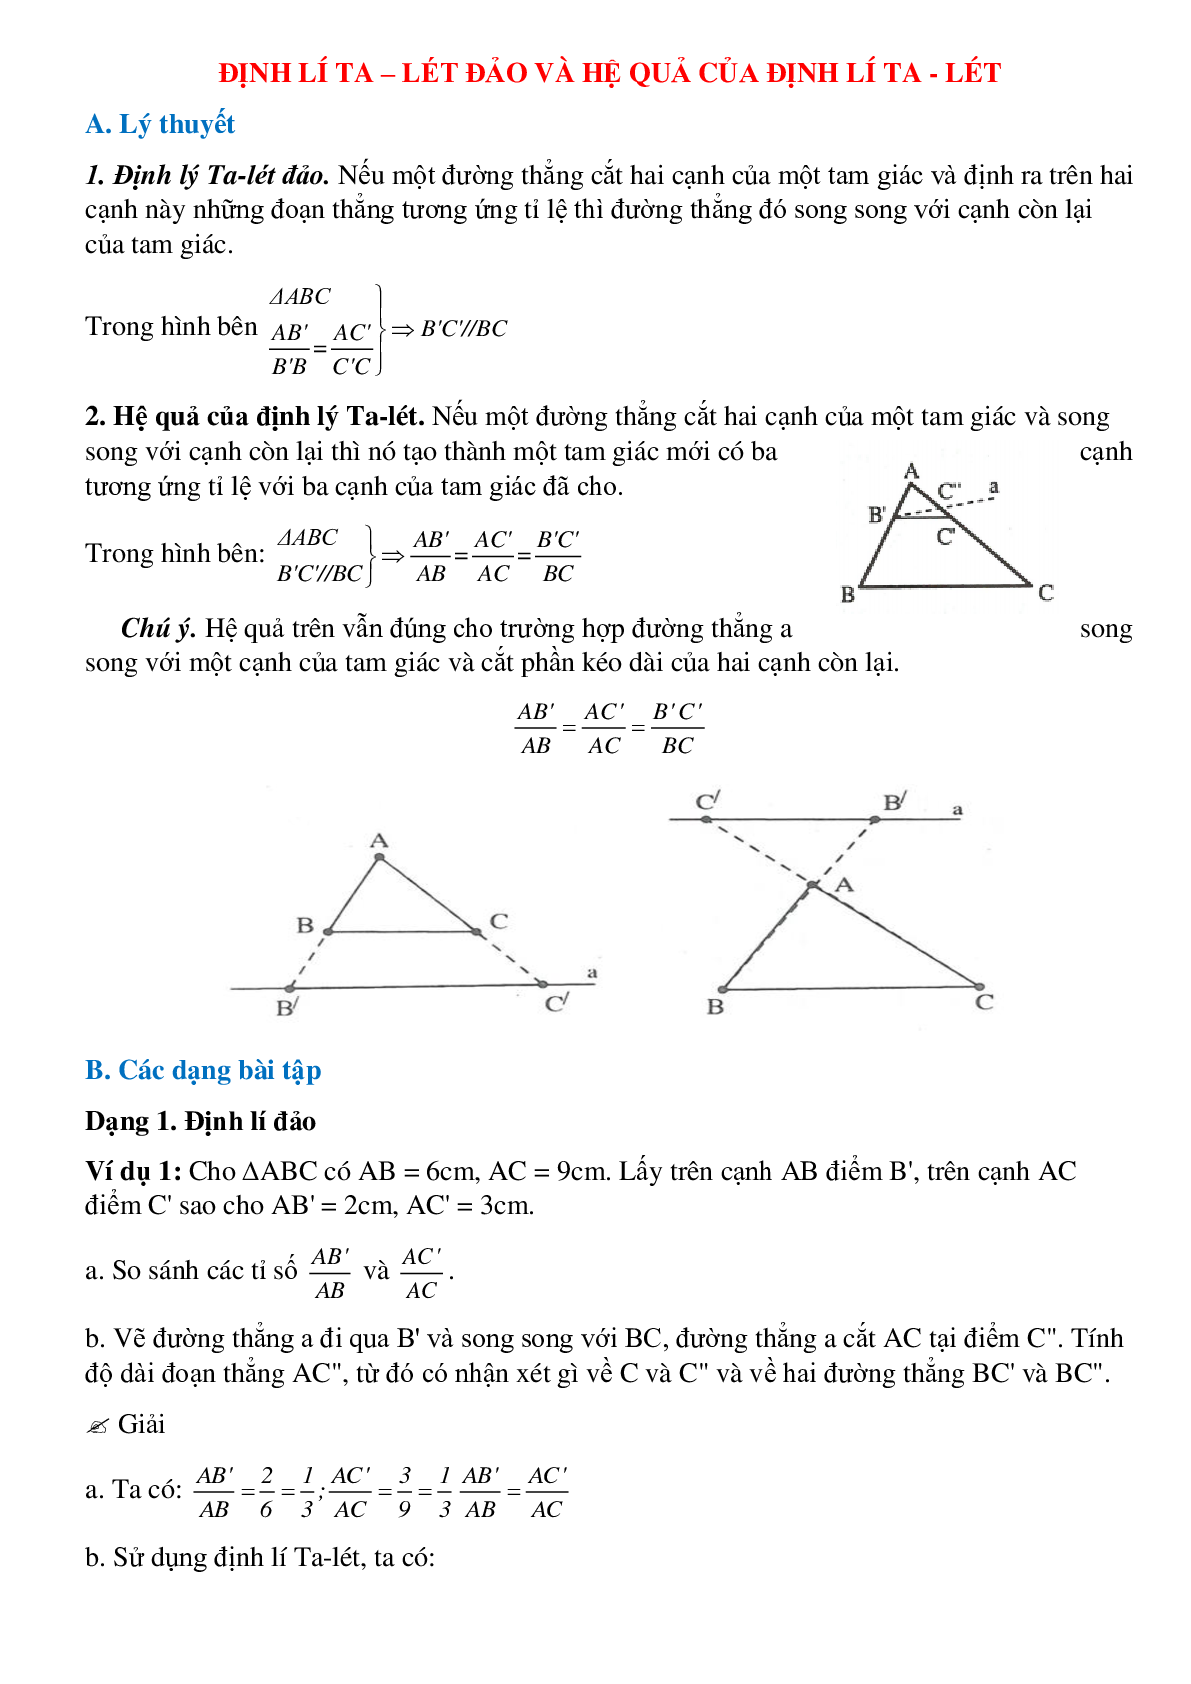 Phương pháp giải chi tiết về Định lí Ta-lét đảo và hệ quả của định lí Ta-lét chọn lọc (trang 1)